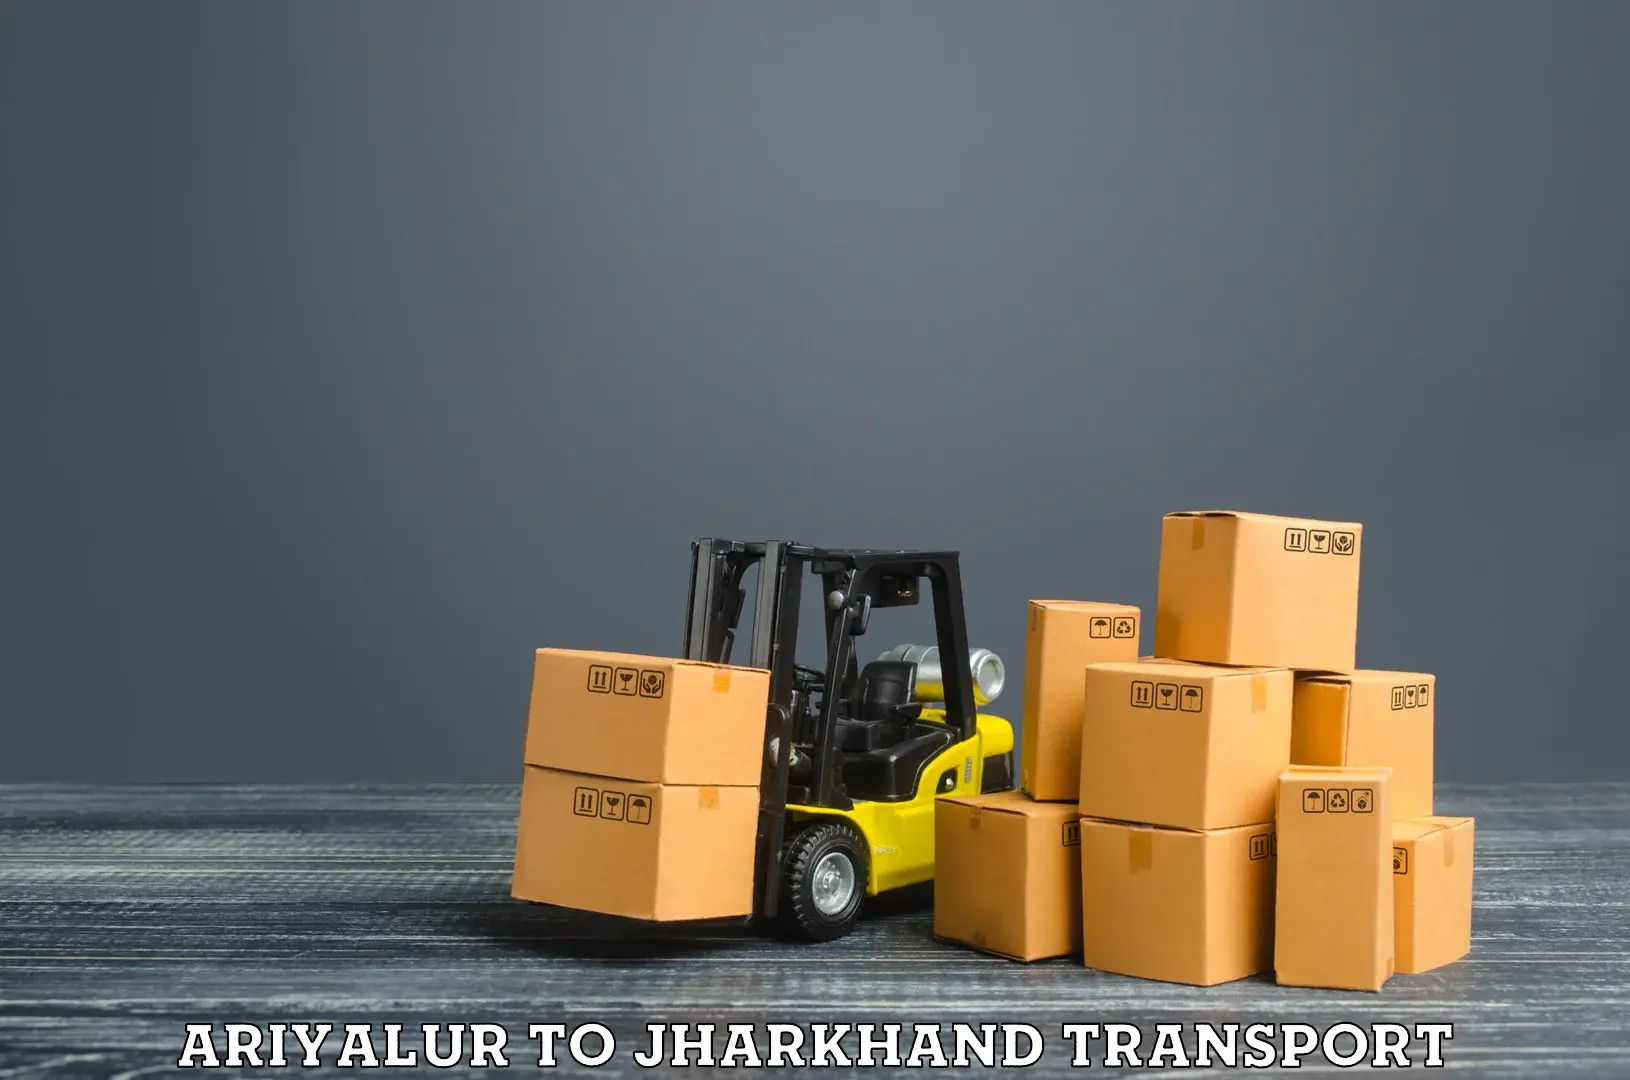 Land transport services Ariyalur to Medininagar